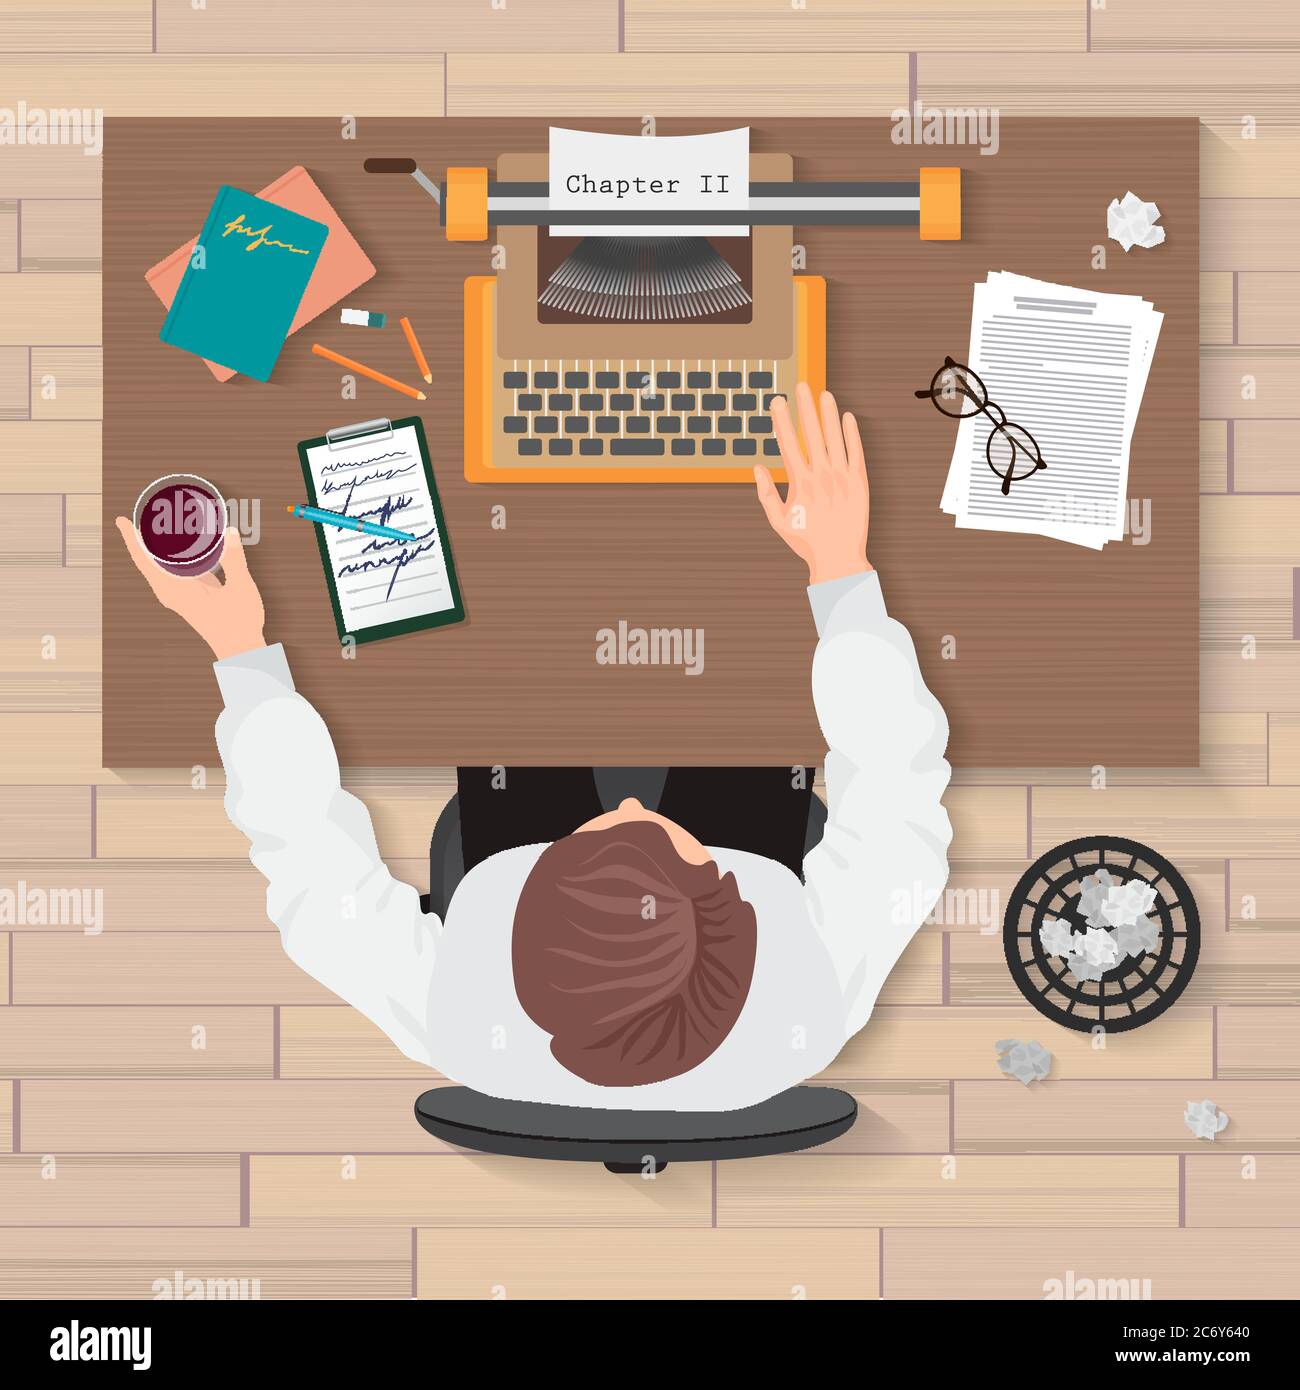 Arbeitsplatz des Autors. Draufsicht auf Mann Schriftsteller arbeiten an Schreibmaschine im Haus oder Büro. Schreibmaschine Schreibmaschine Top Konzept Stock Vektor